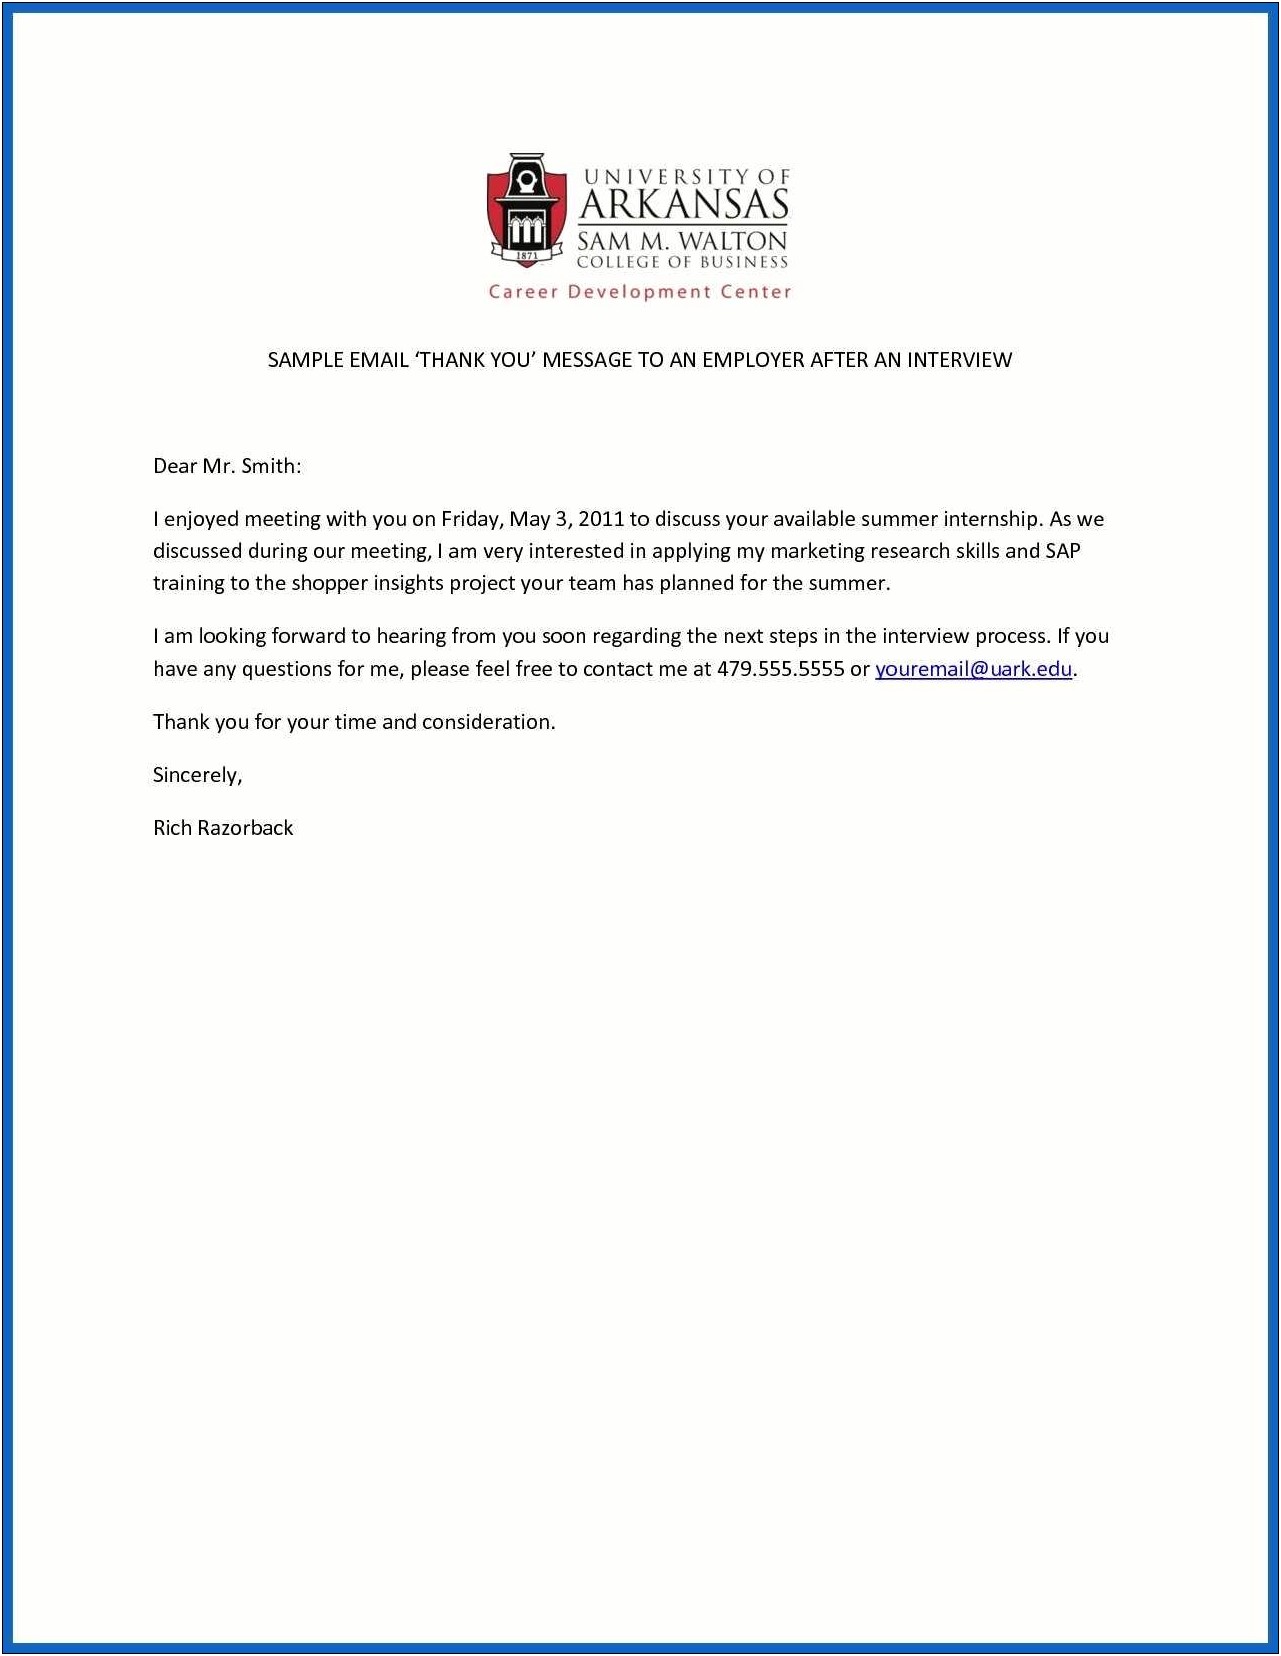 Sample Resume University Of Arkansa